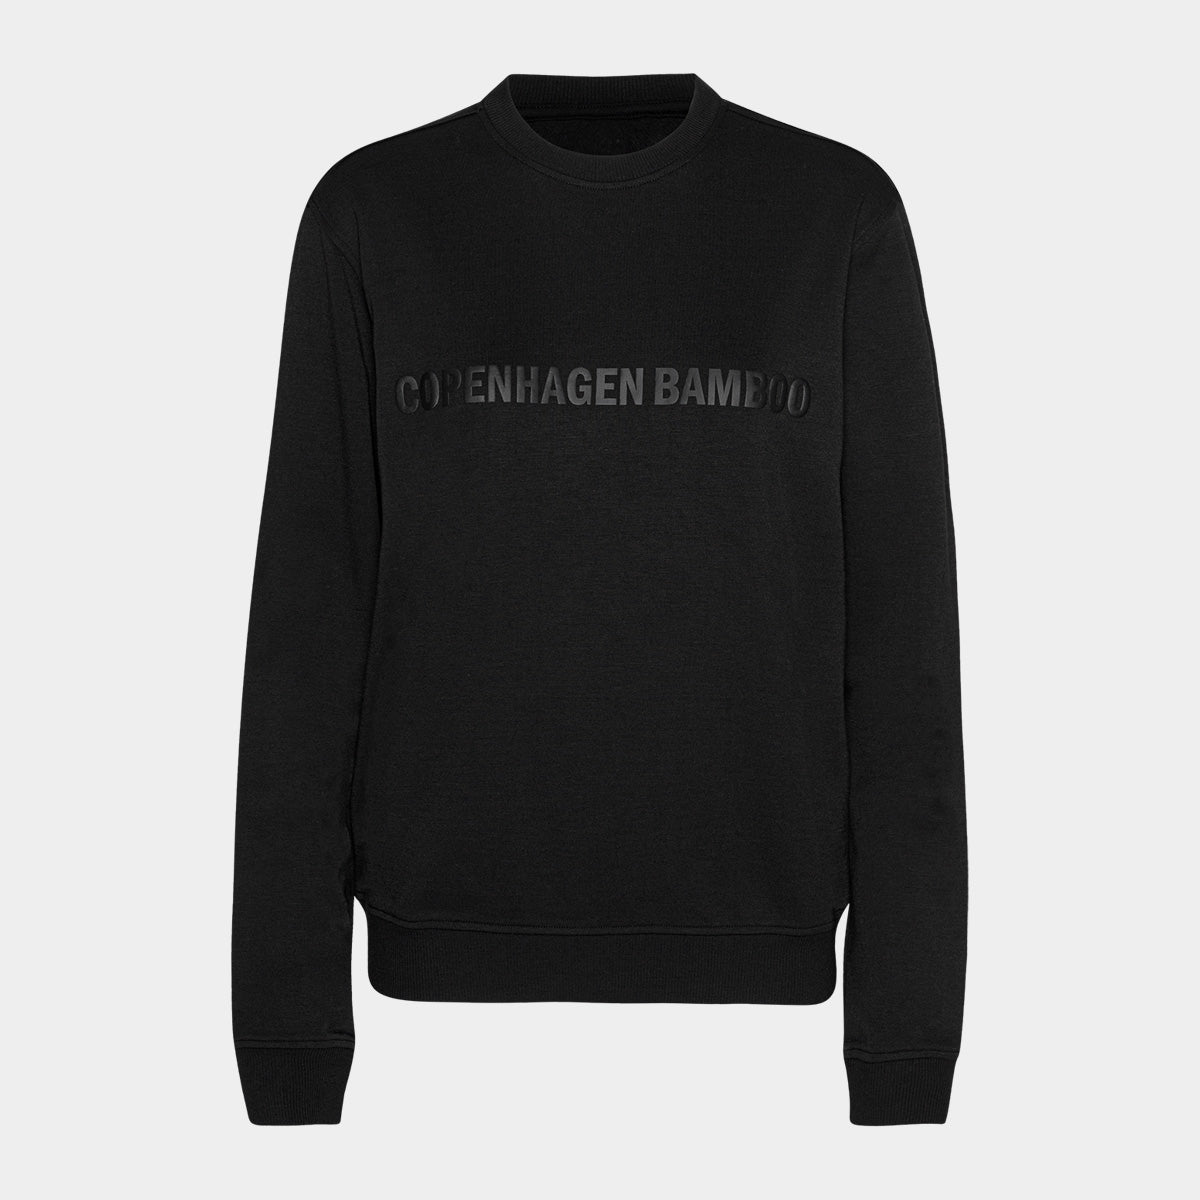 Se Sort bambus sweatshirt til dame med logo fra Copenhagen Bamboo, XS hos Bambustøj.dk